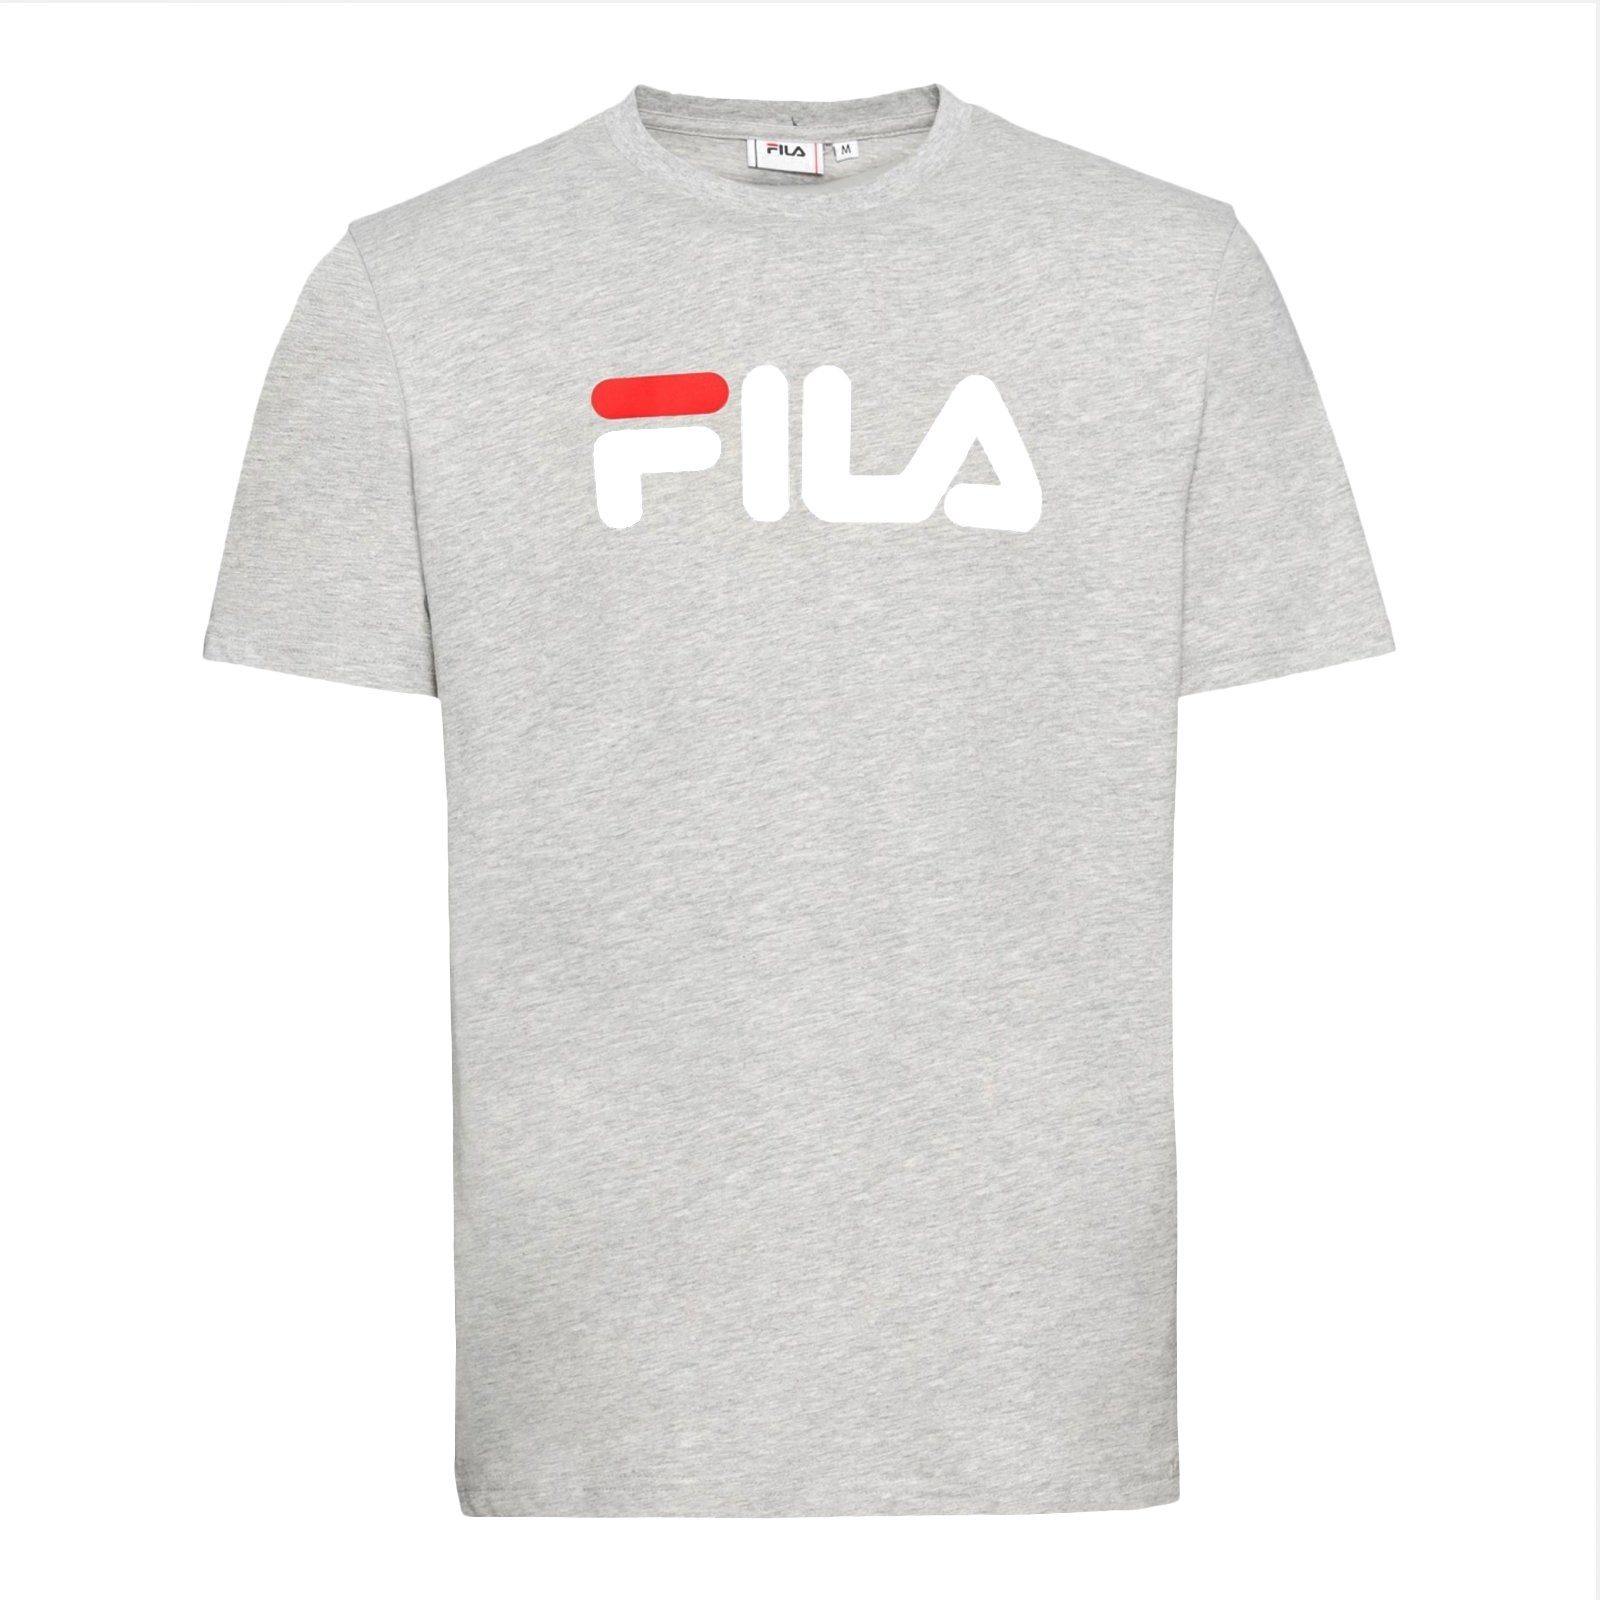 Fila T-Shirt Bellano Tee mit 80000 light plakativem grey melange Markenschriftzug